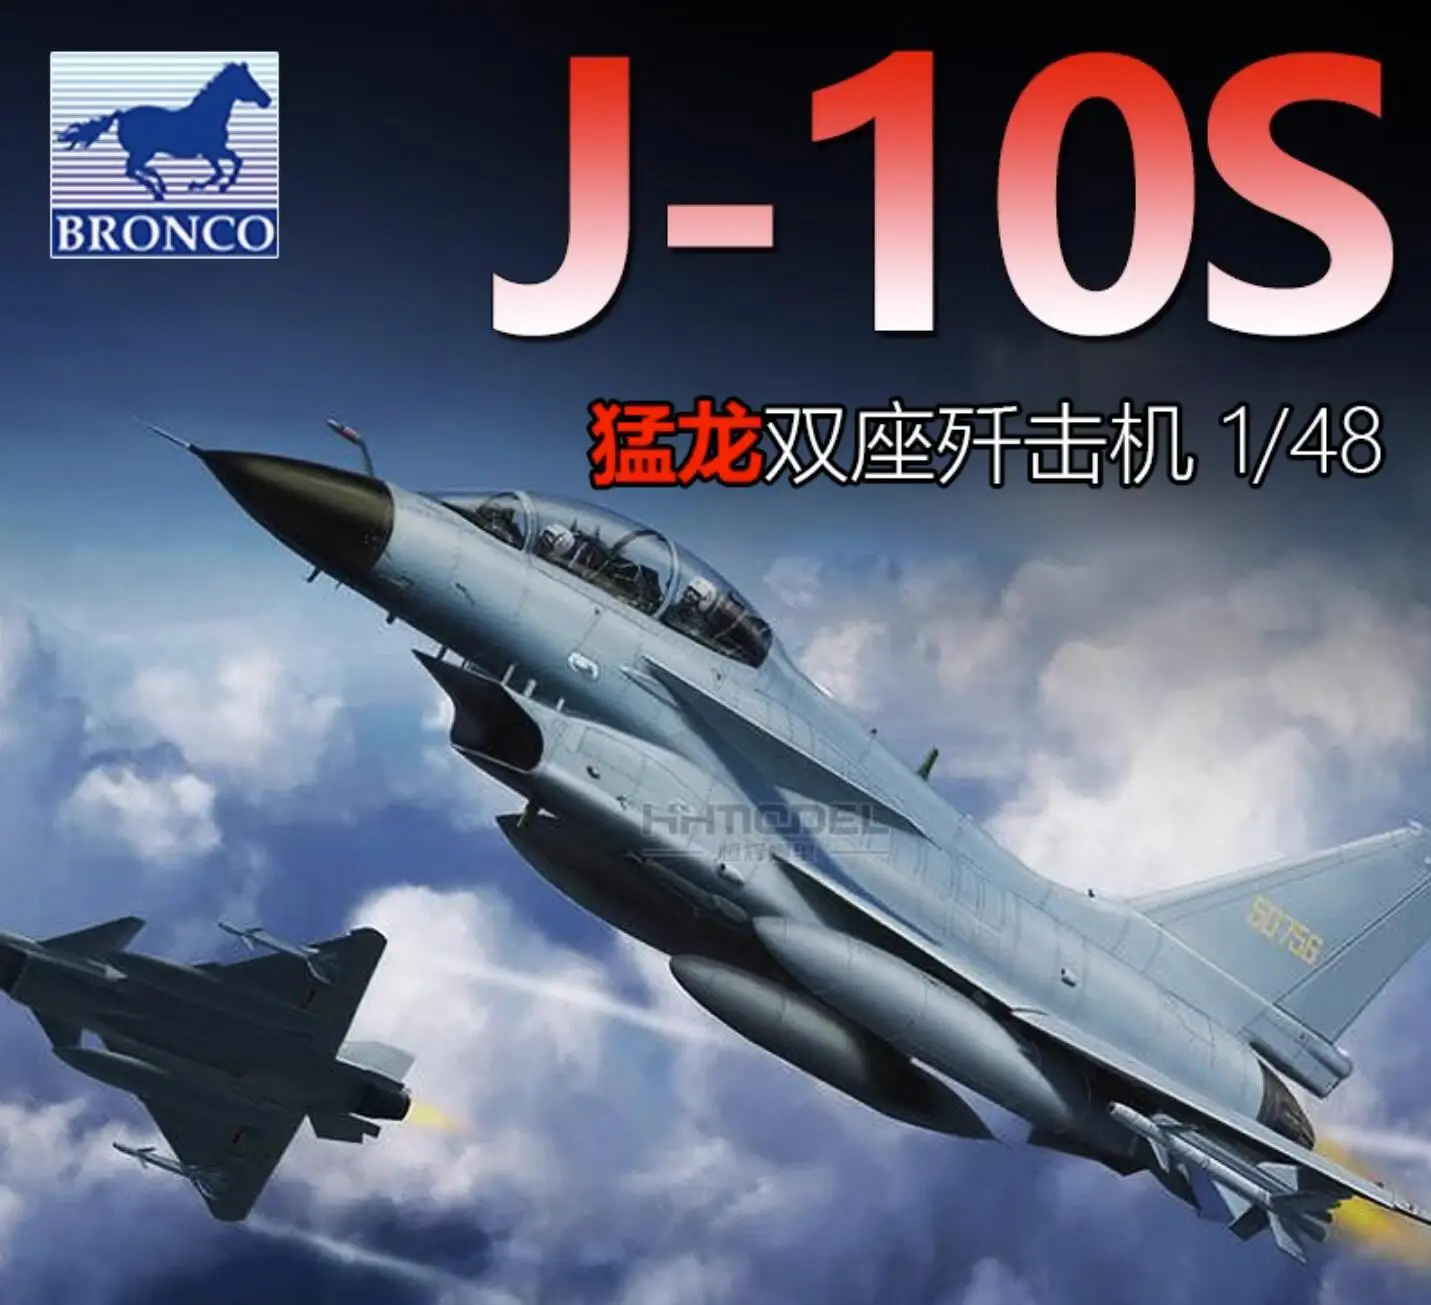 Bronco FB4005 1/48 Китайский комплект моделей 2-местных тренажеров PLAAF J-10S